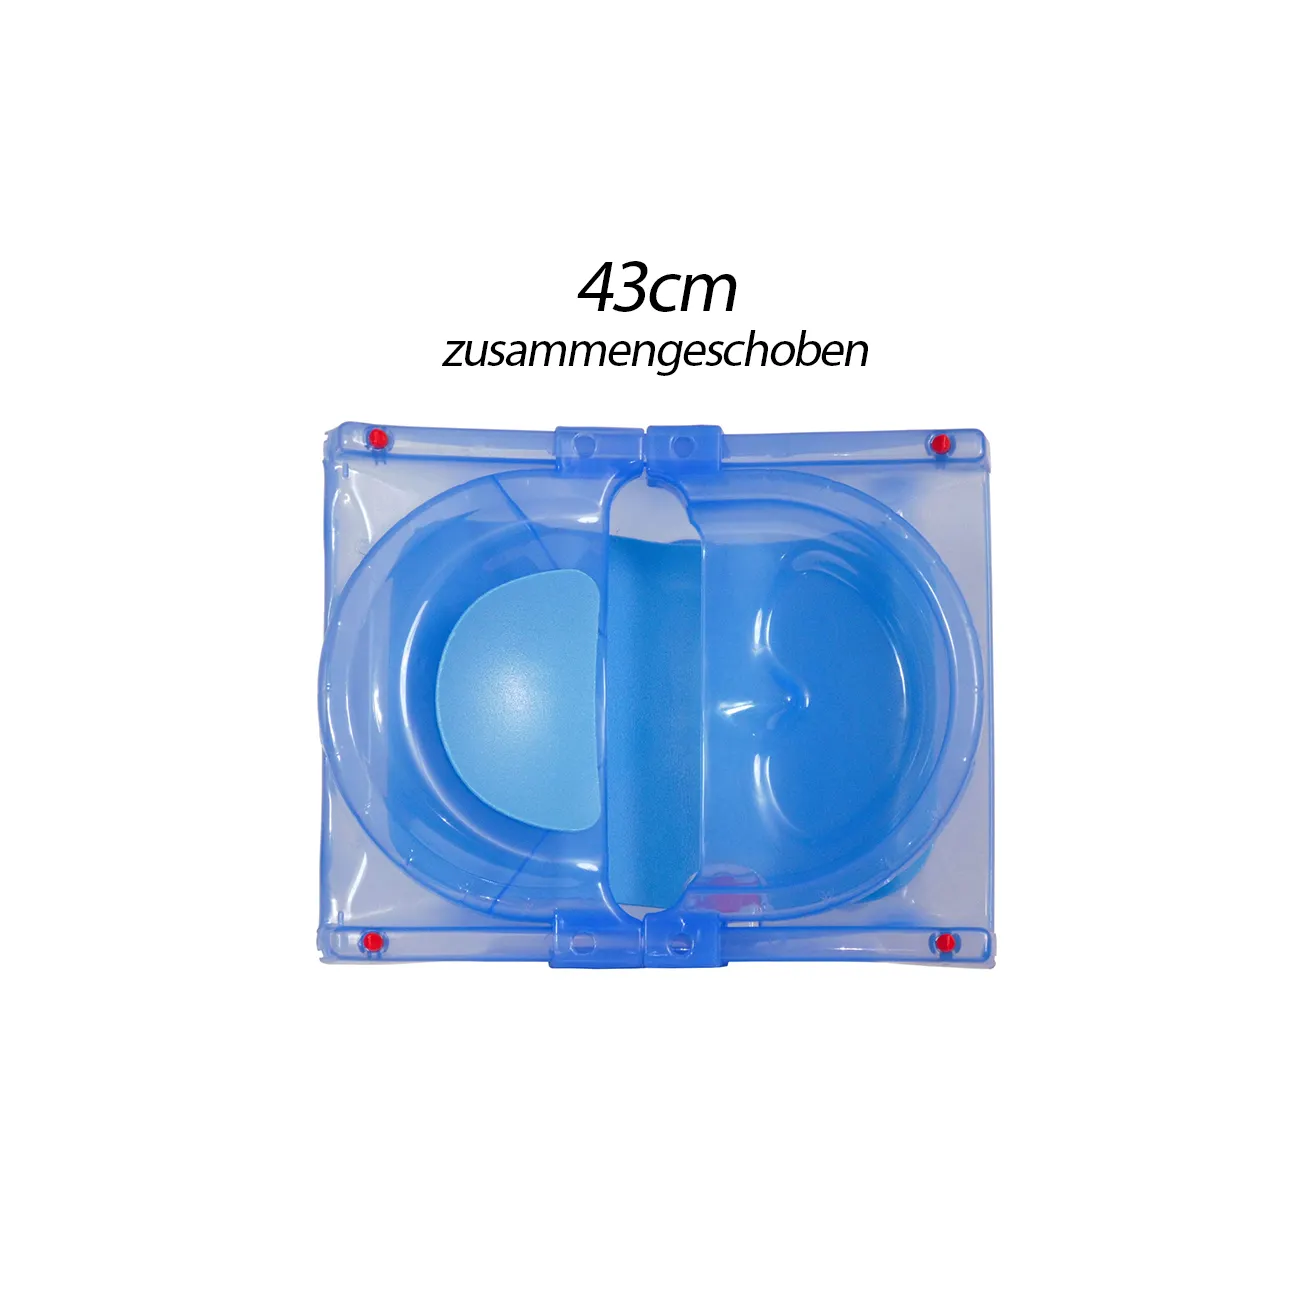 ZEKIWA Baby Badewanne [LEICHT UND ROBUST] das erste Planschbecken für Ihr Baby - Babywanne ausziehbar bs 74cm - bis max 9kg - mit Polsterung - Babywanne Blue